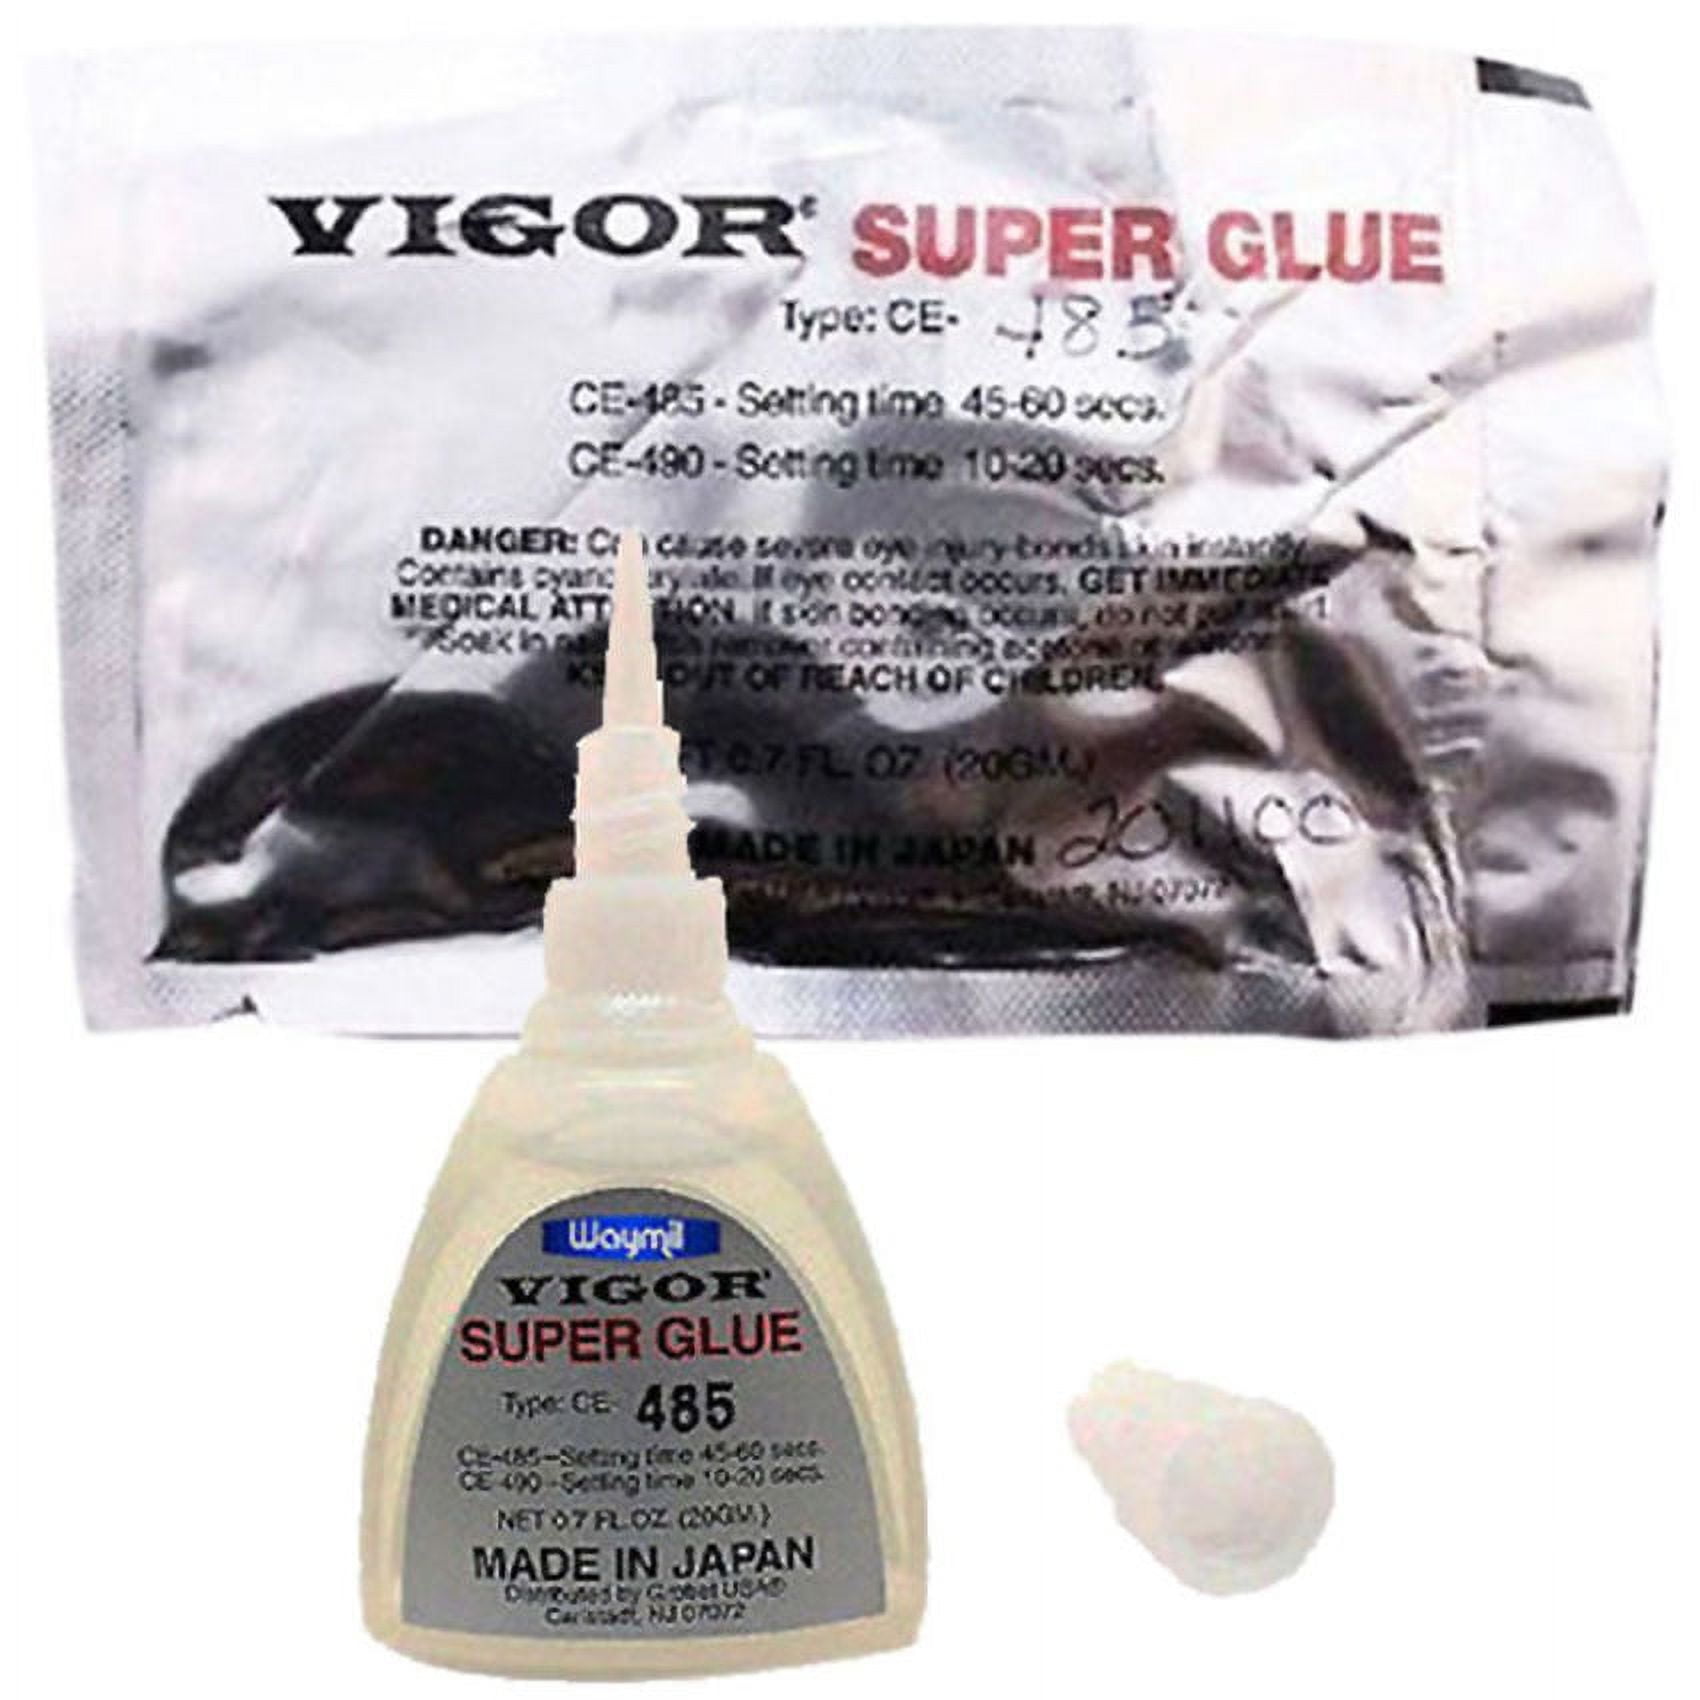 Vigor Super Glue - 10-20 Second Set – A to Z Jewelry Tools & Supplies